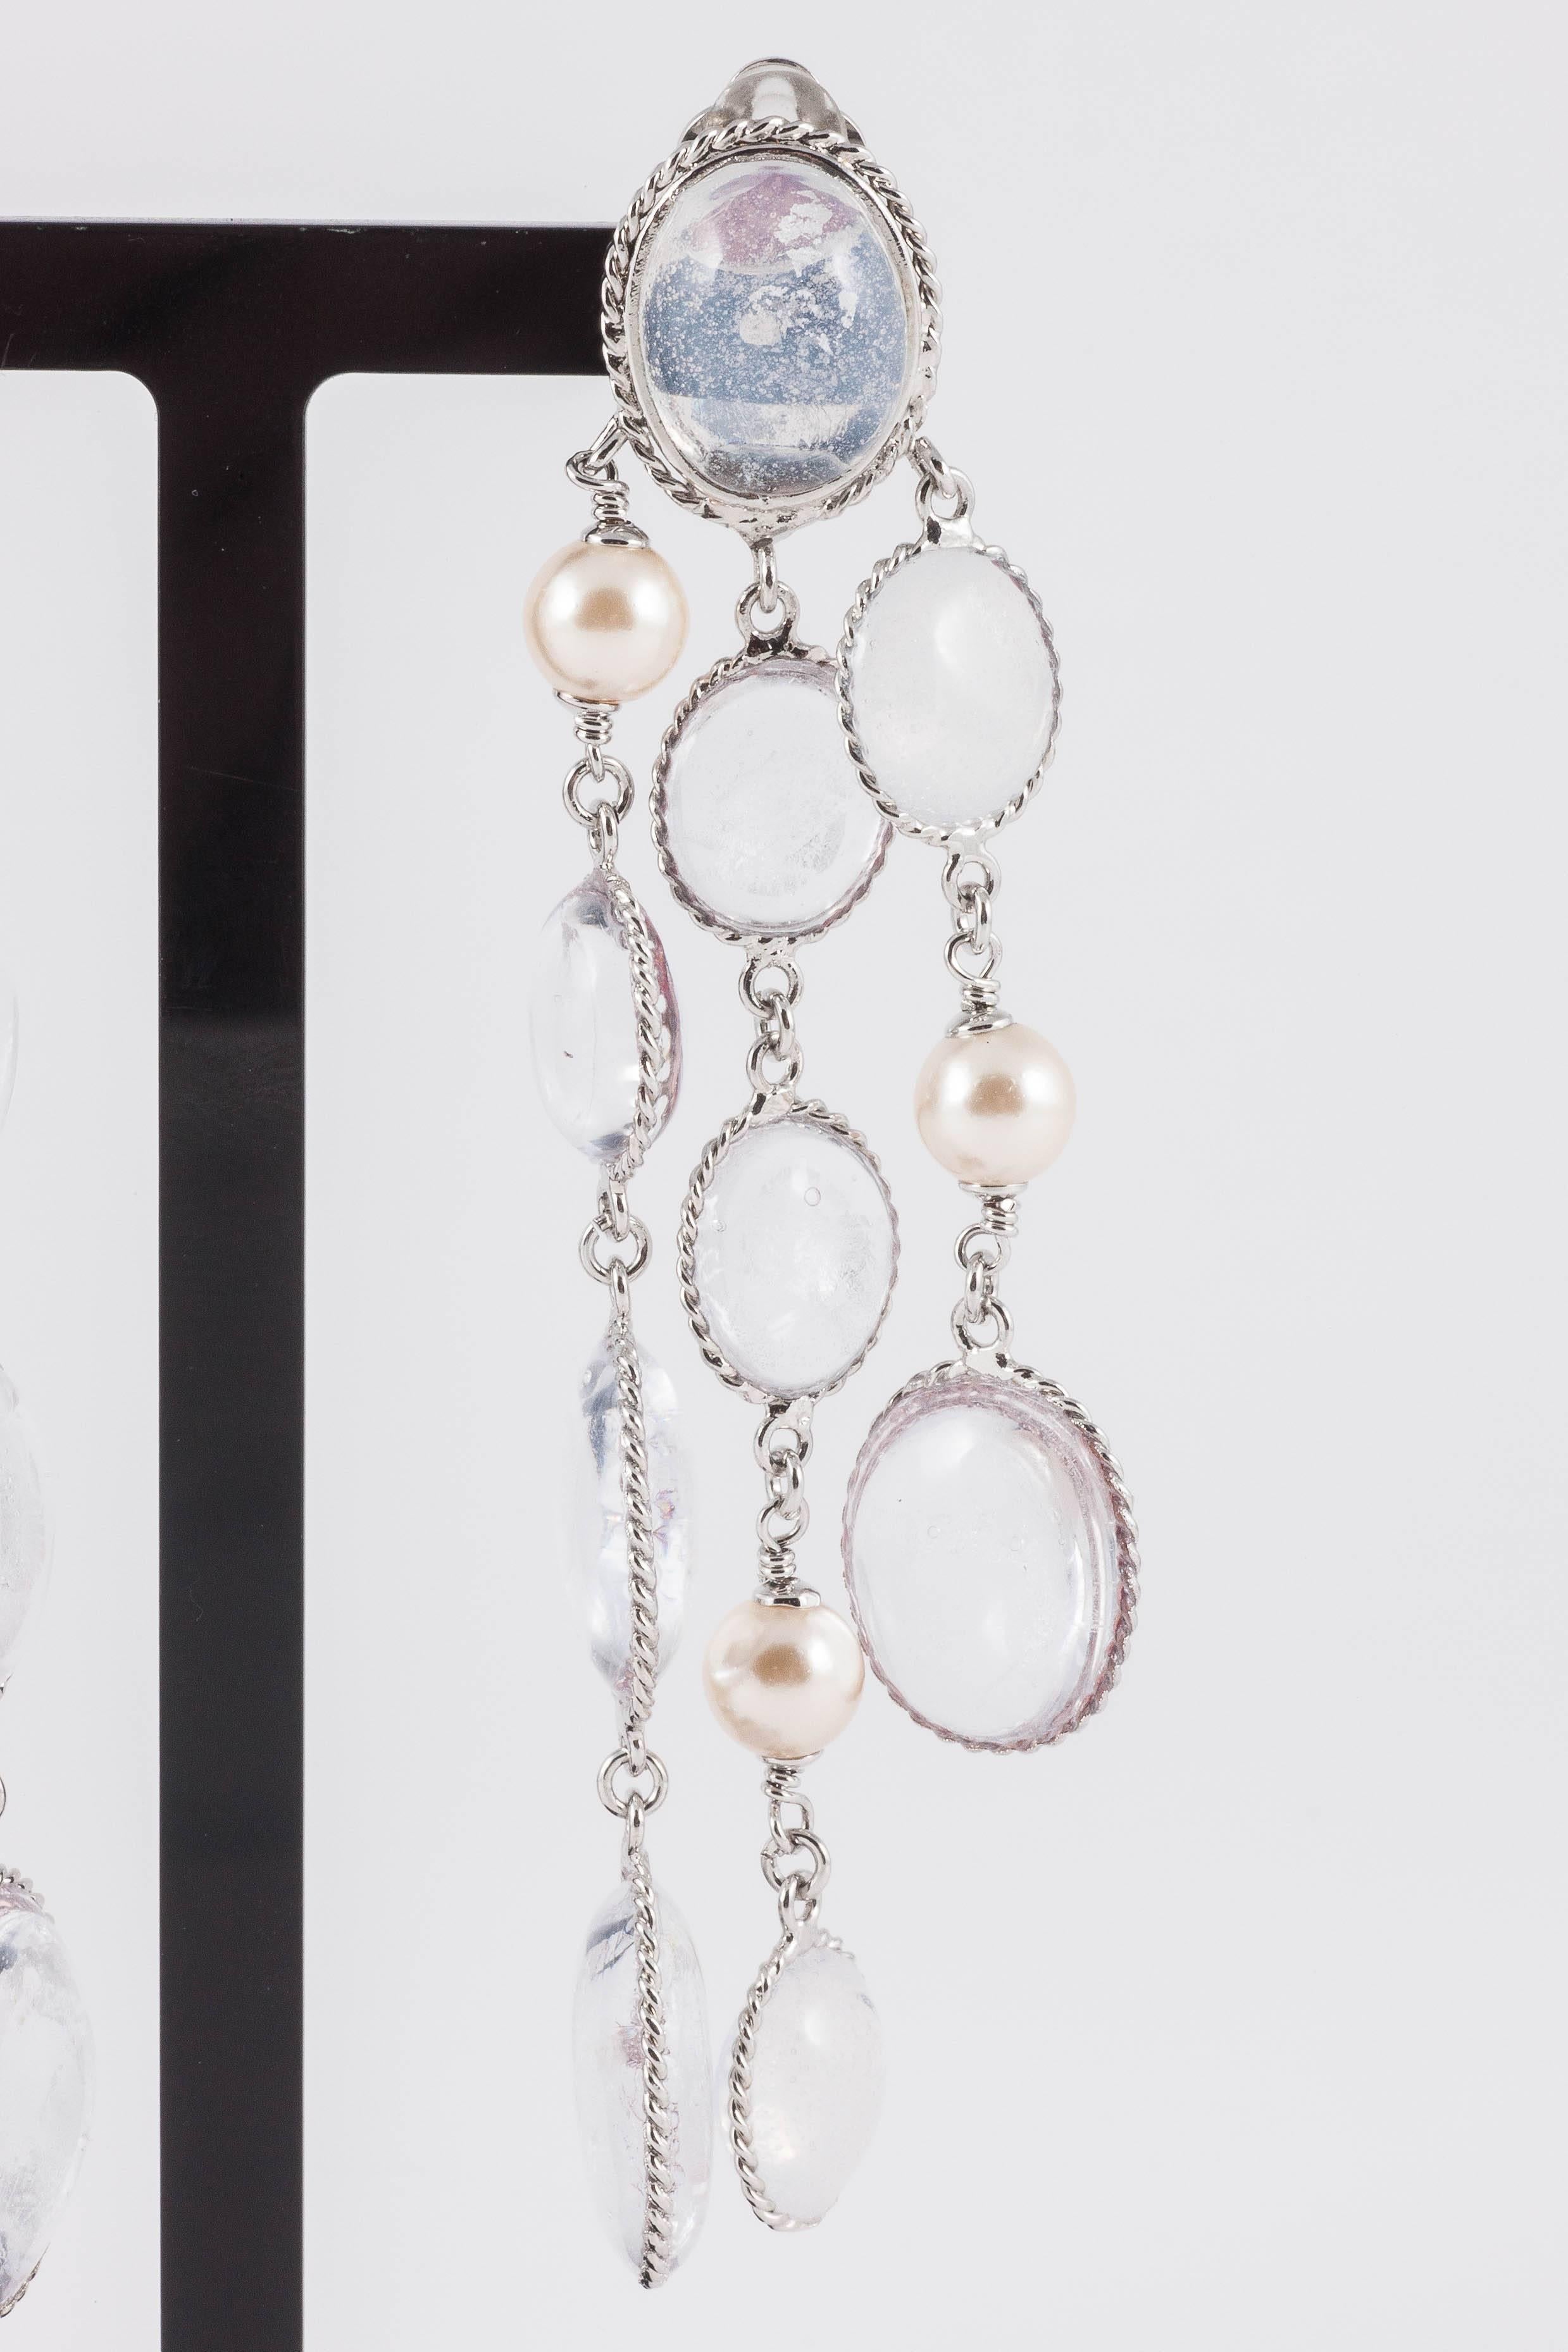 Schicke und elegante, gegliederte, signierte Tropfenohrringe, in drei versetzten Reihen  aus Blattsilber, eingefasst in klares Gussglas, gemischt mit Perlen, aus der WW-Kollektion, eine zeitgenössische, limitierte Auflage, handgefertigt in Paris